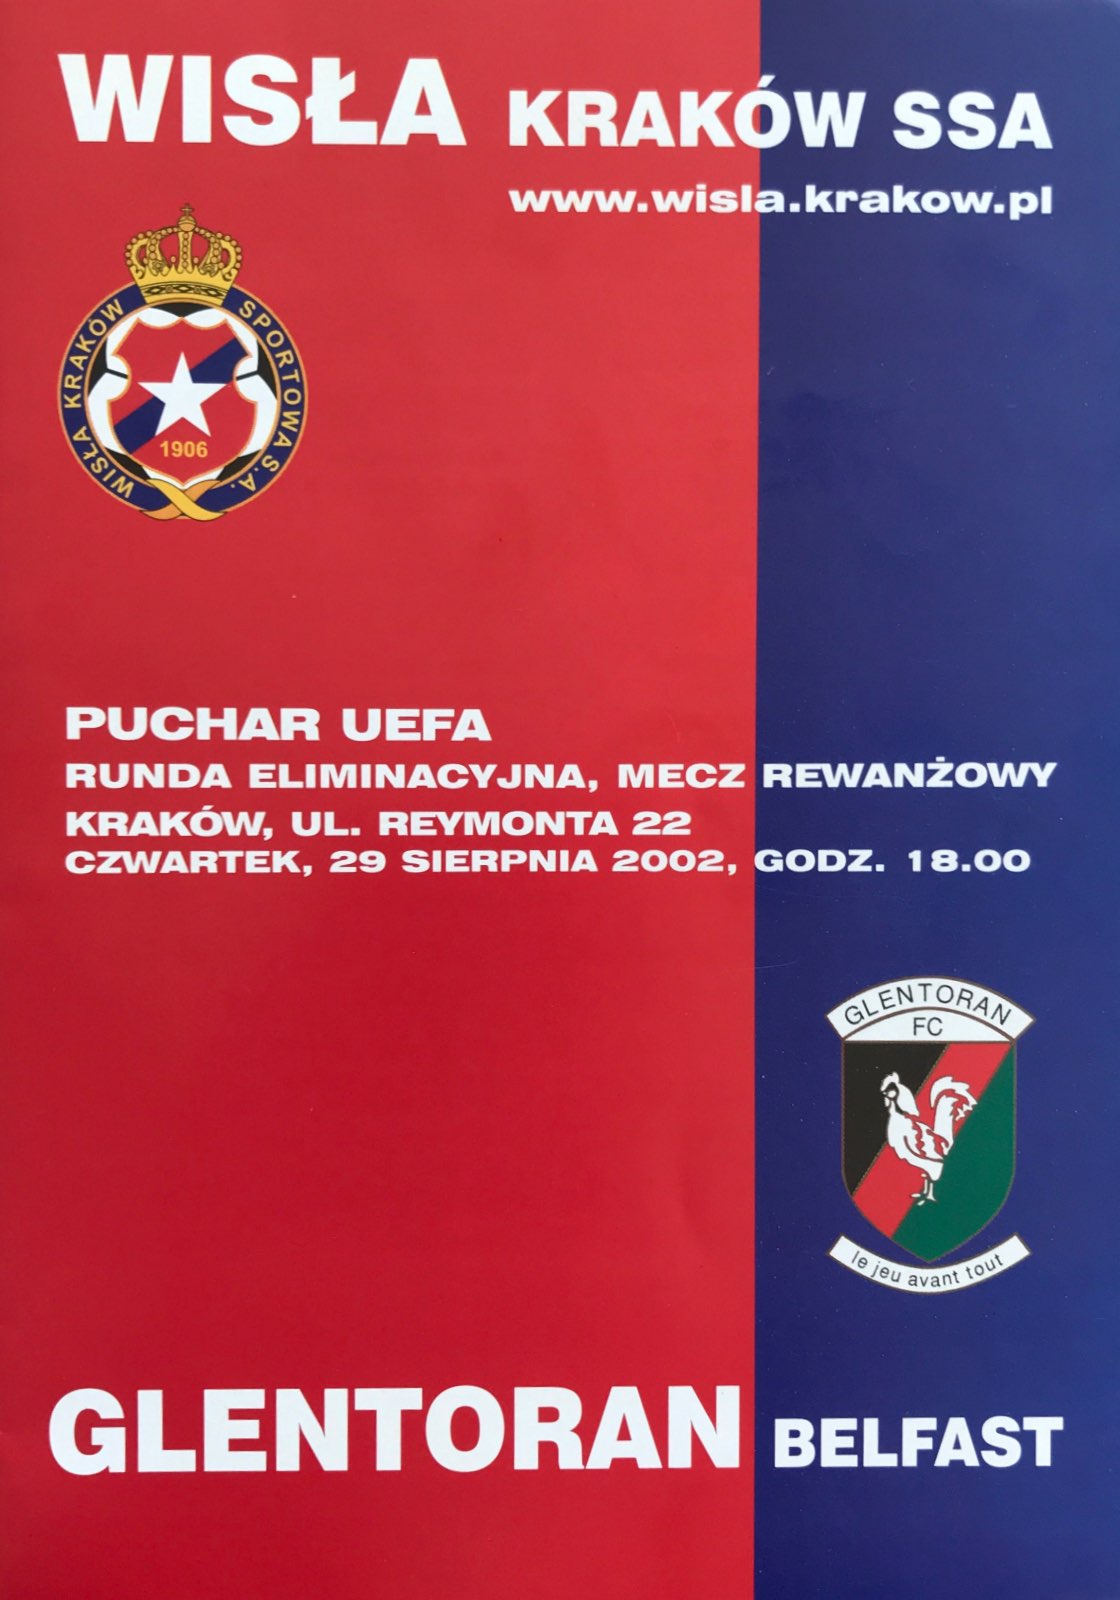 Program meczowy Wisła Kraków - Glentoran Belfast 4:0 (29.08.2002).